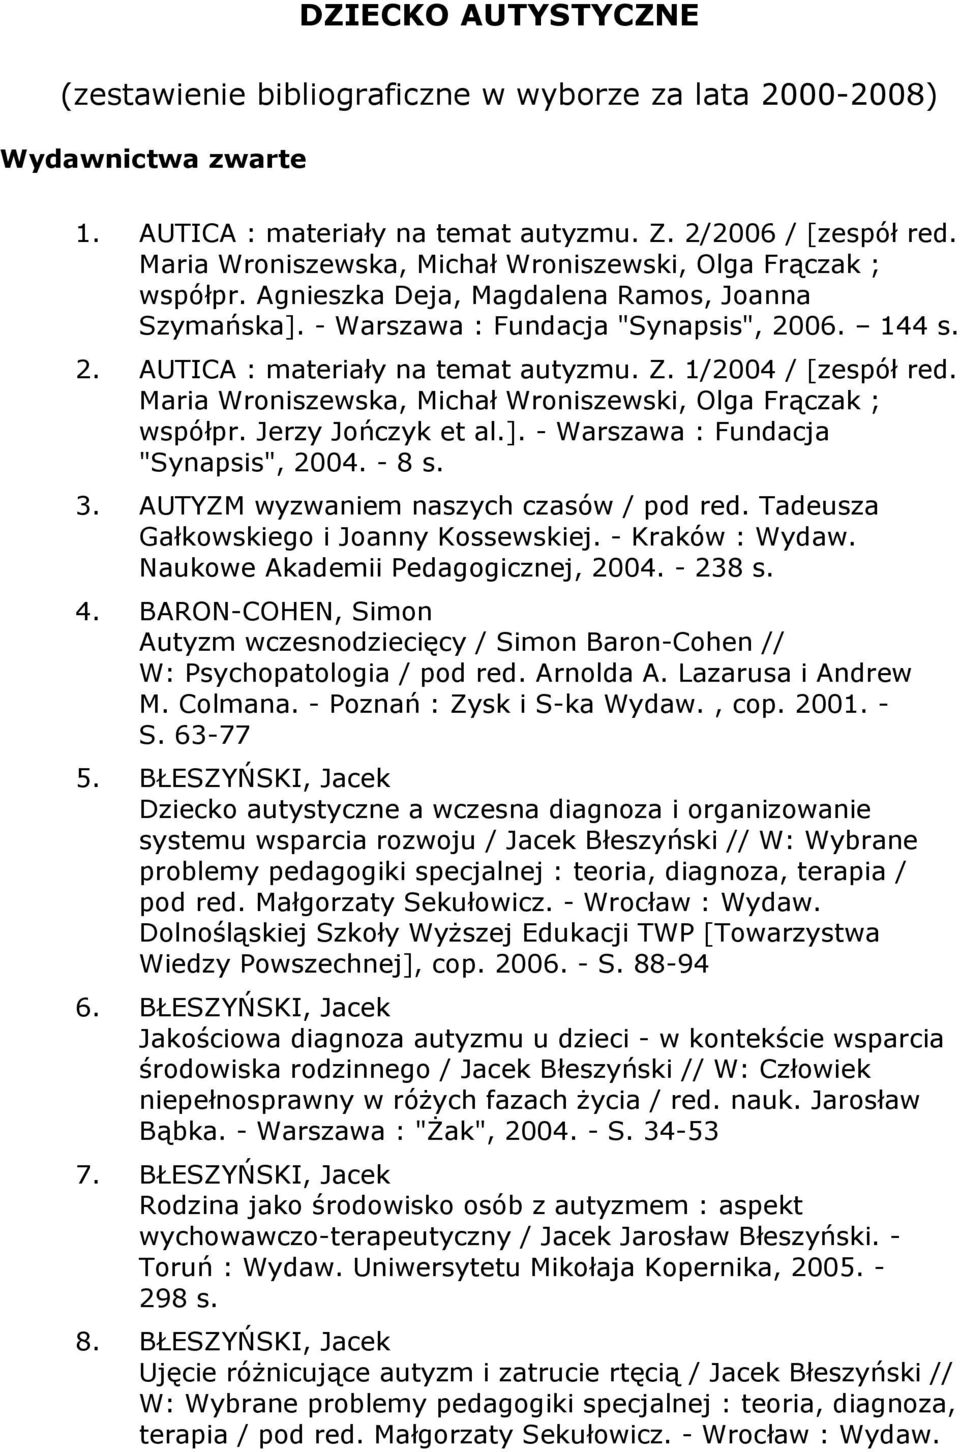 Z. 1/2004 / [zespół red. Maria Wroniszewska, Michał Wroniszewski, Olga Frączak ; współpr. Jerzy Jończyk et al.]. - Warszawa : Fundacja "Synapsis", 2004. - 8 s. 3.